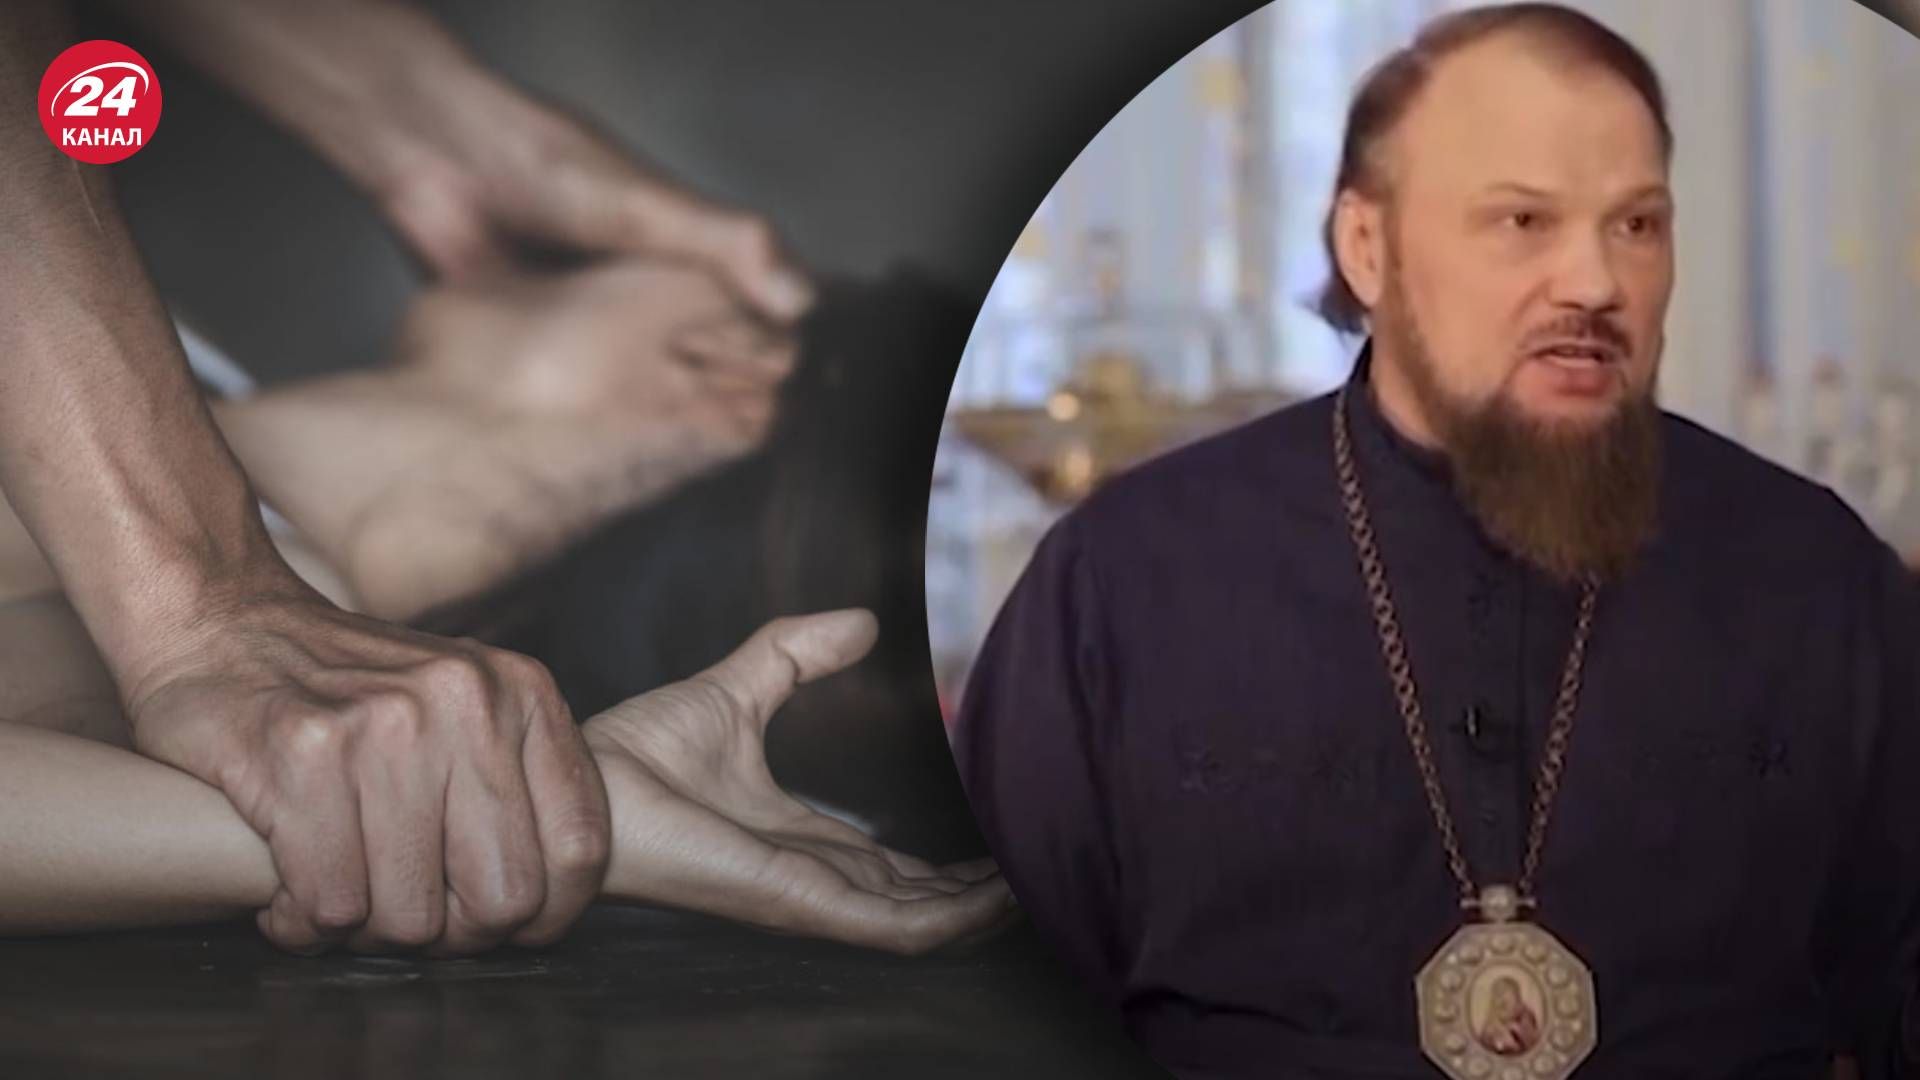 Архиепископ РПЦ говорит, что насильник может попасть в рай, а жертва в ад - видео